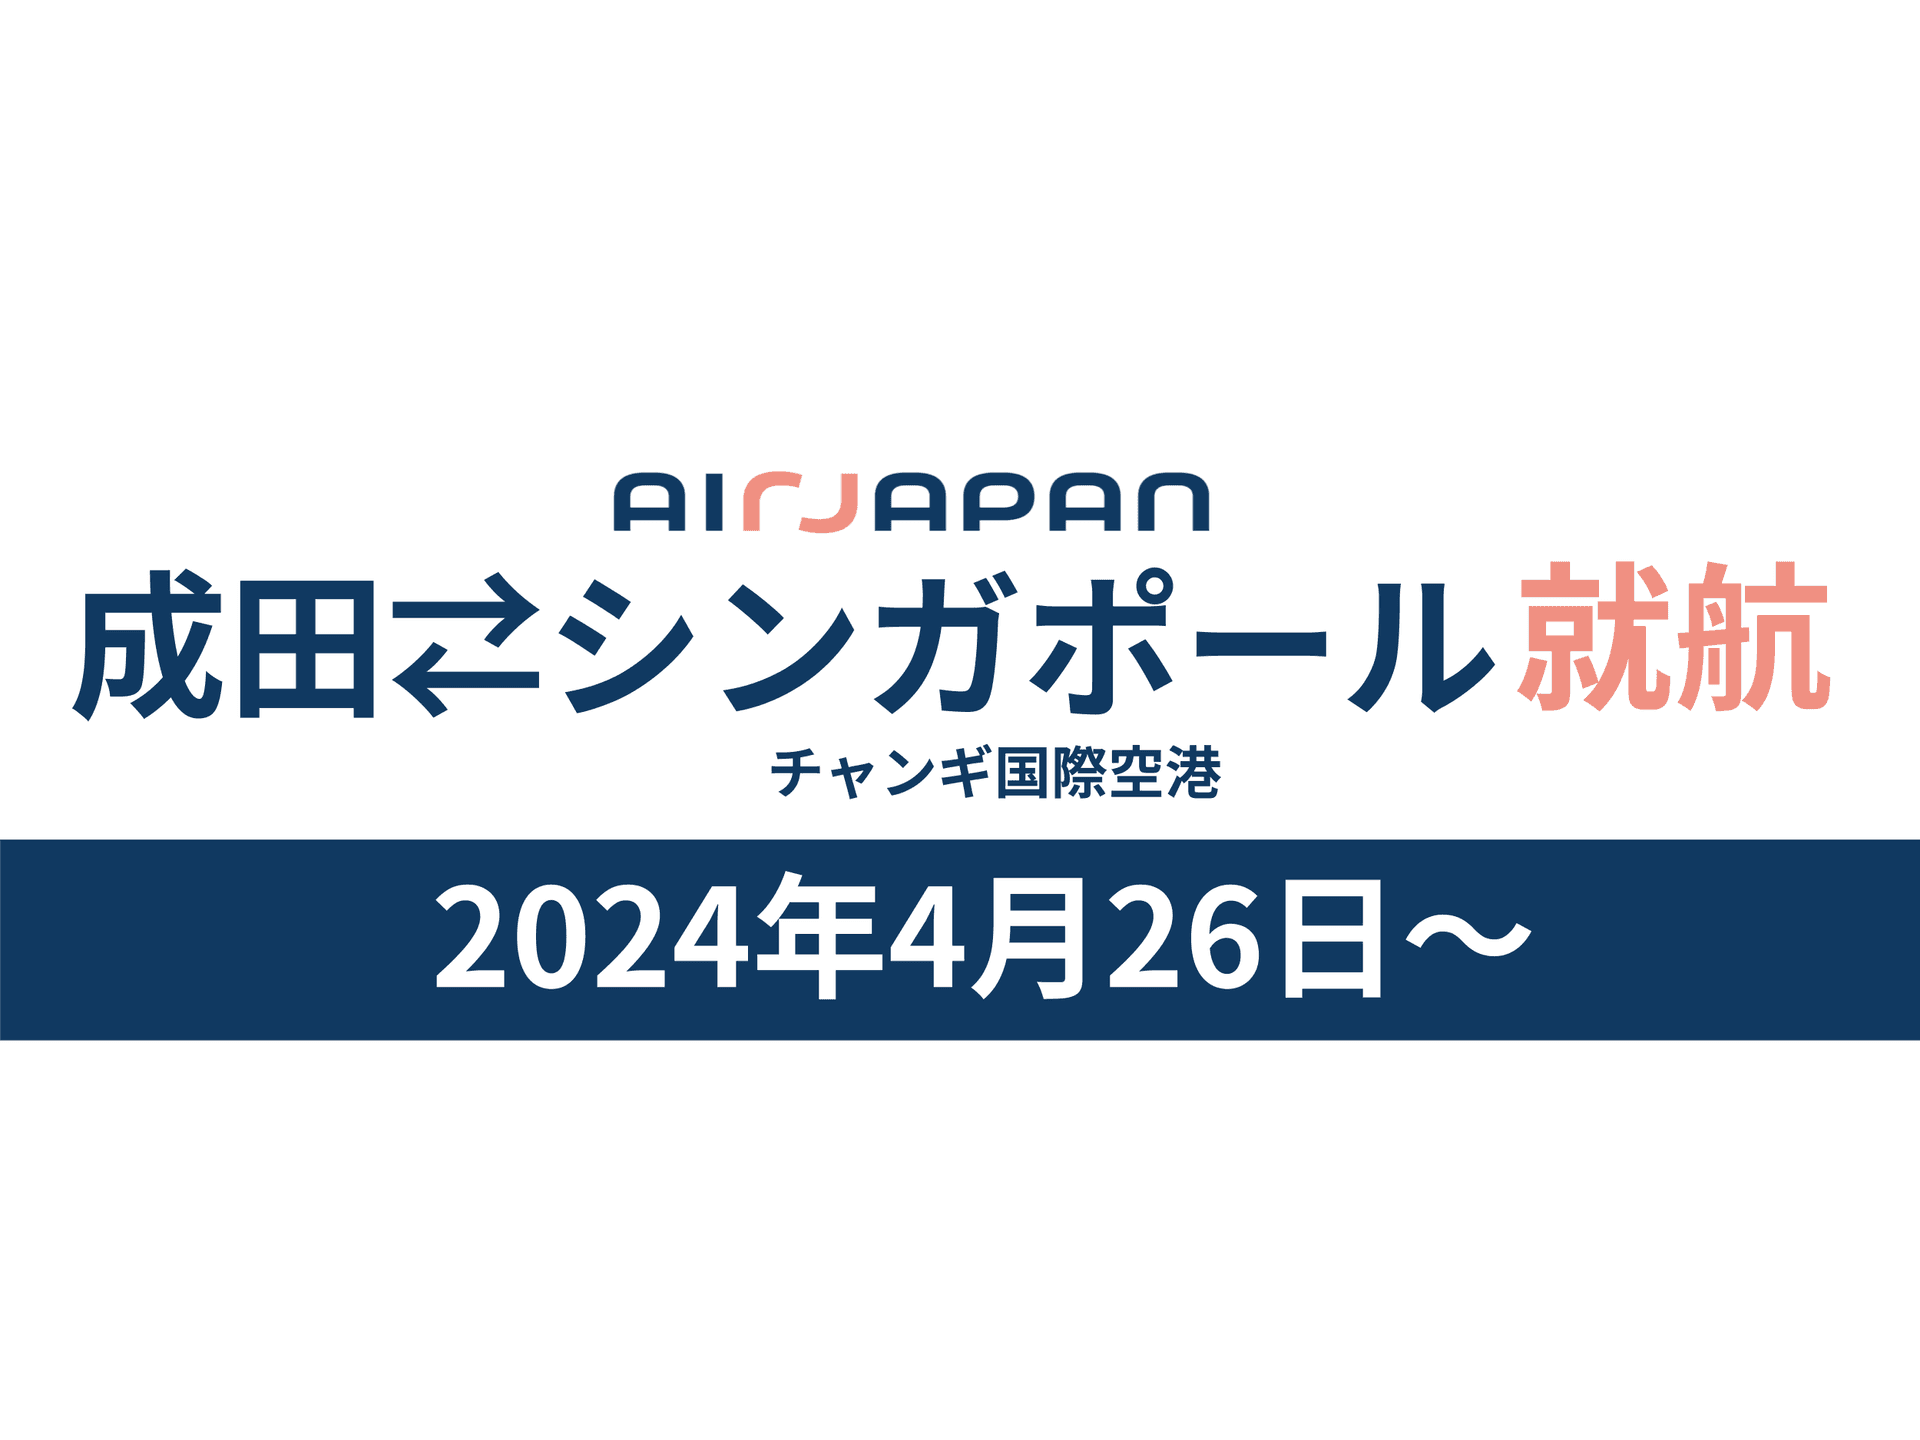 Airjapanは2024年4月26日に成田、シンガポール間の直行便を就航します。